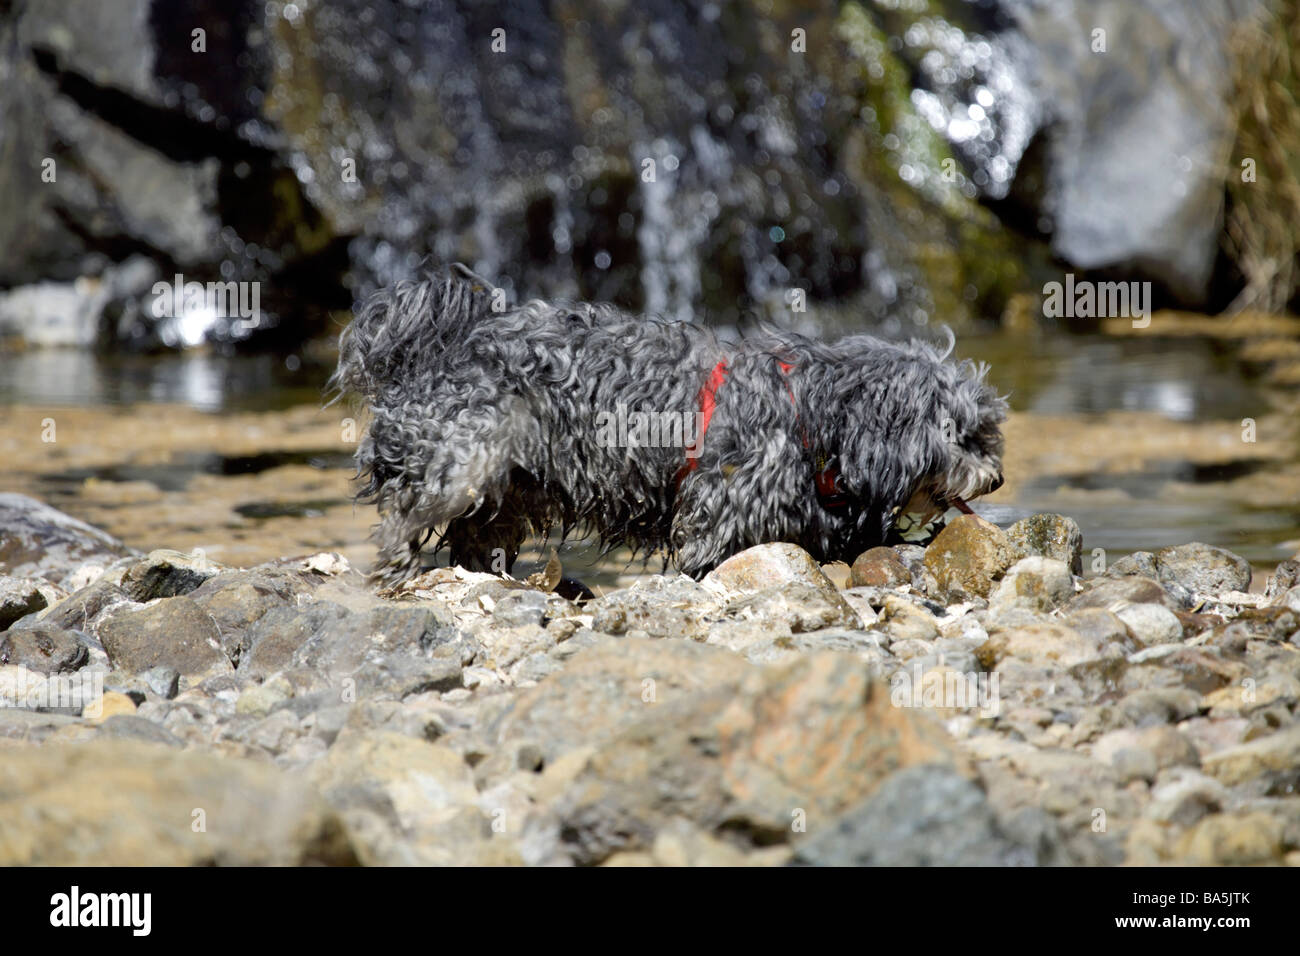 Petit chien dans la campagne, Enterrios, Mijas, Andalousie, Espagne, Europe Banque D'Images